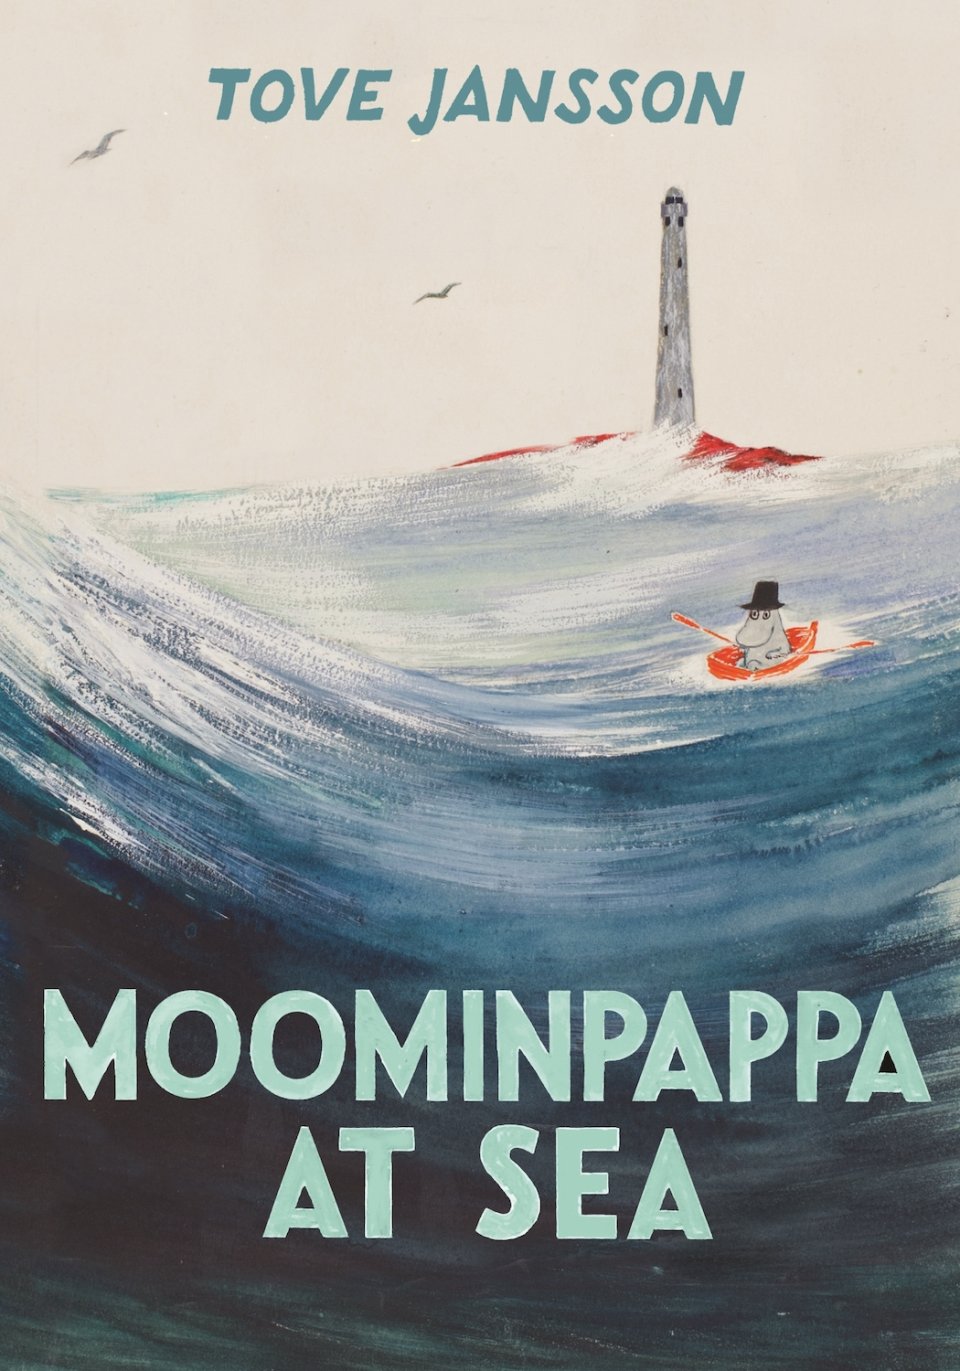 moominpappa at sea book